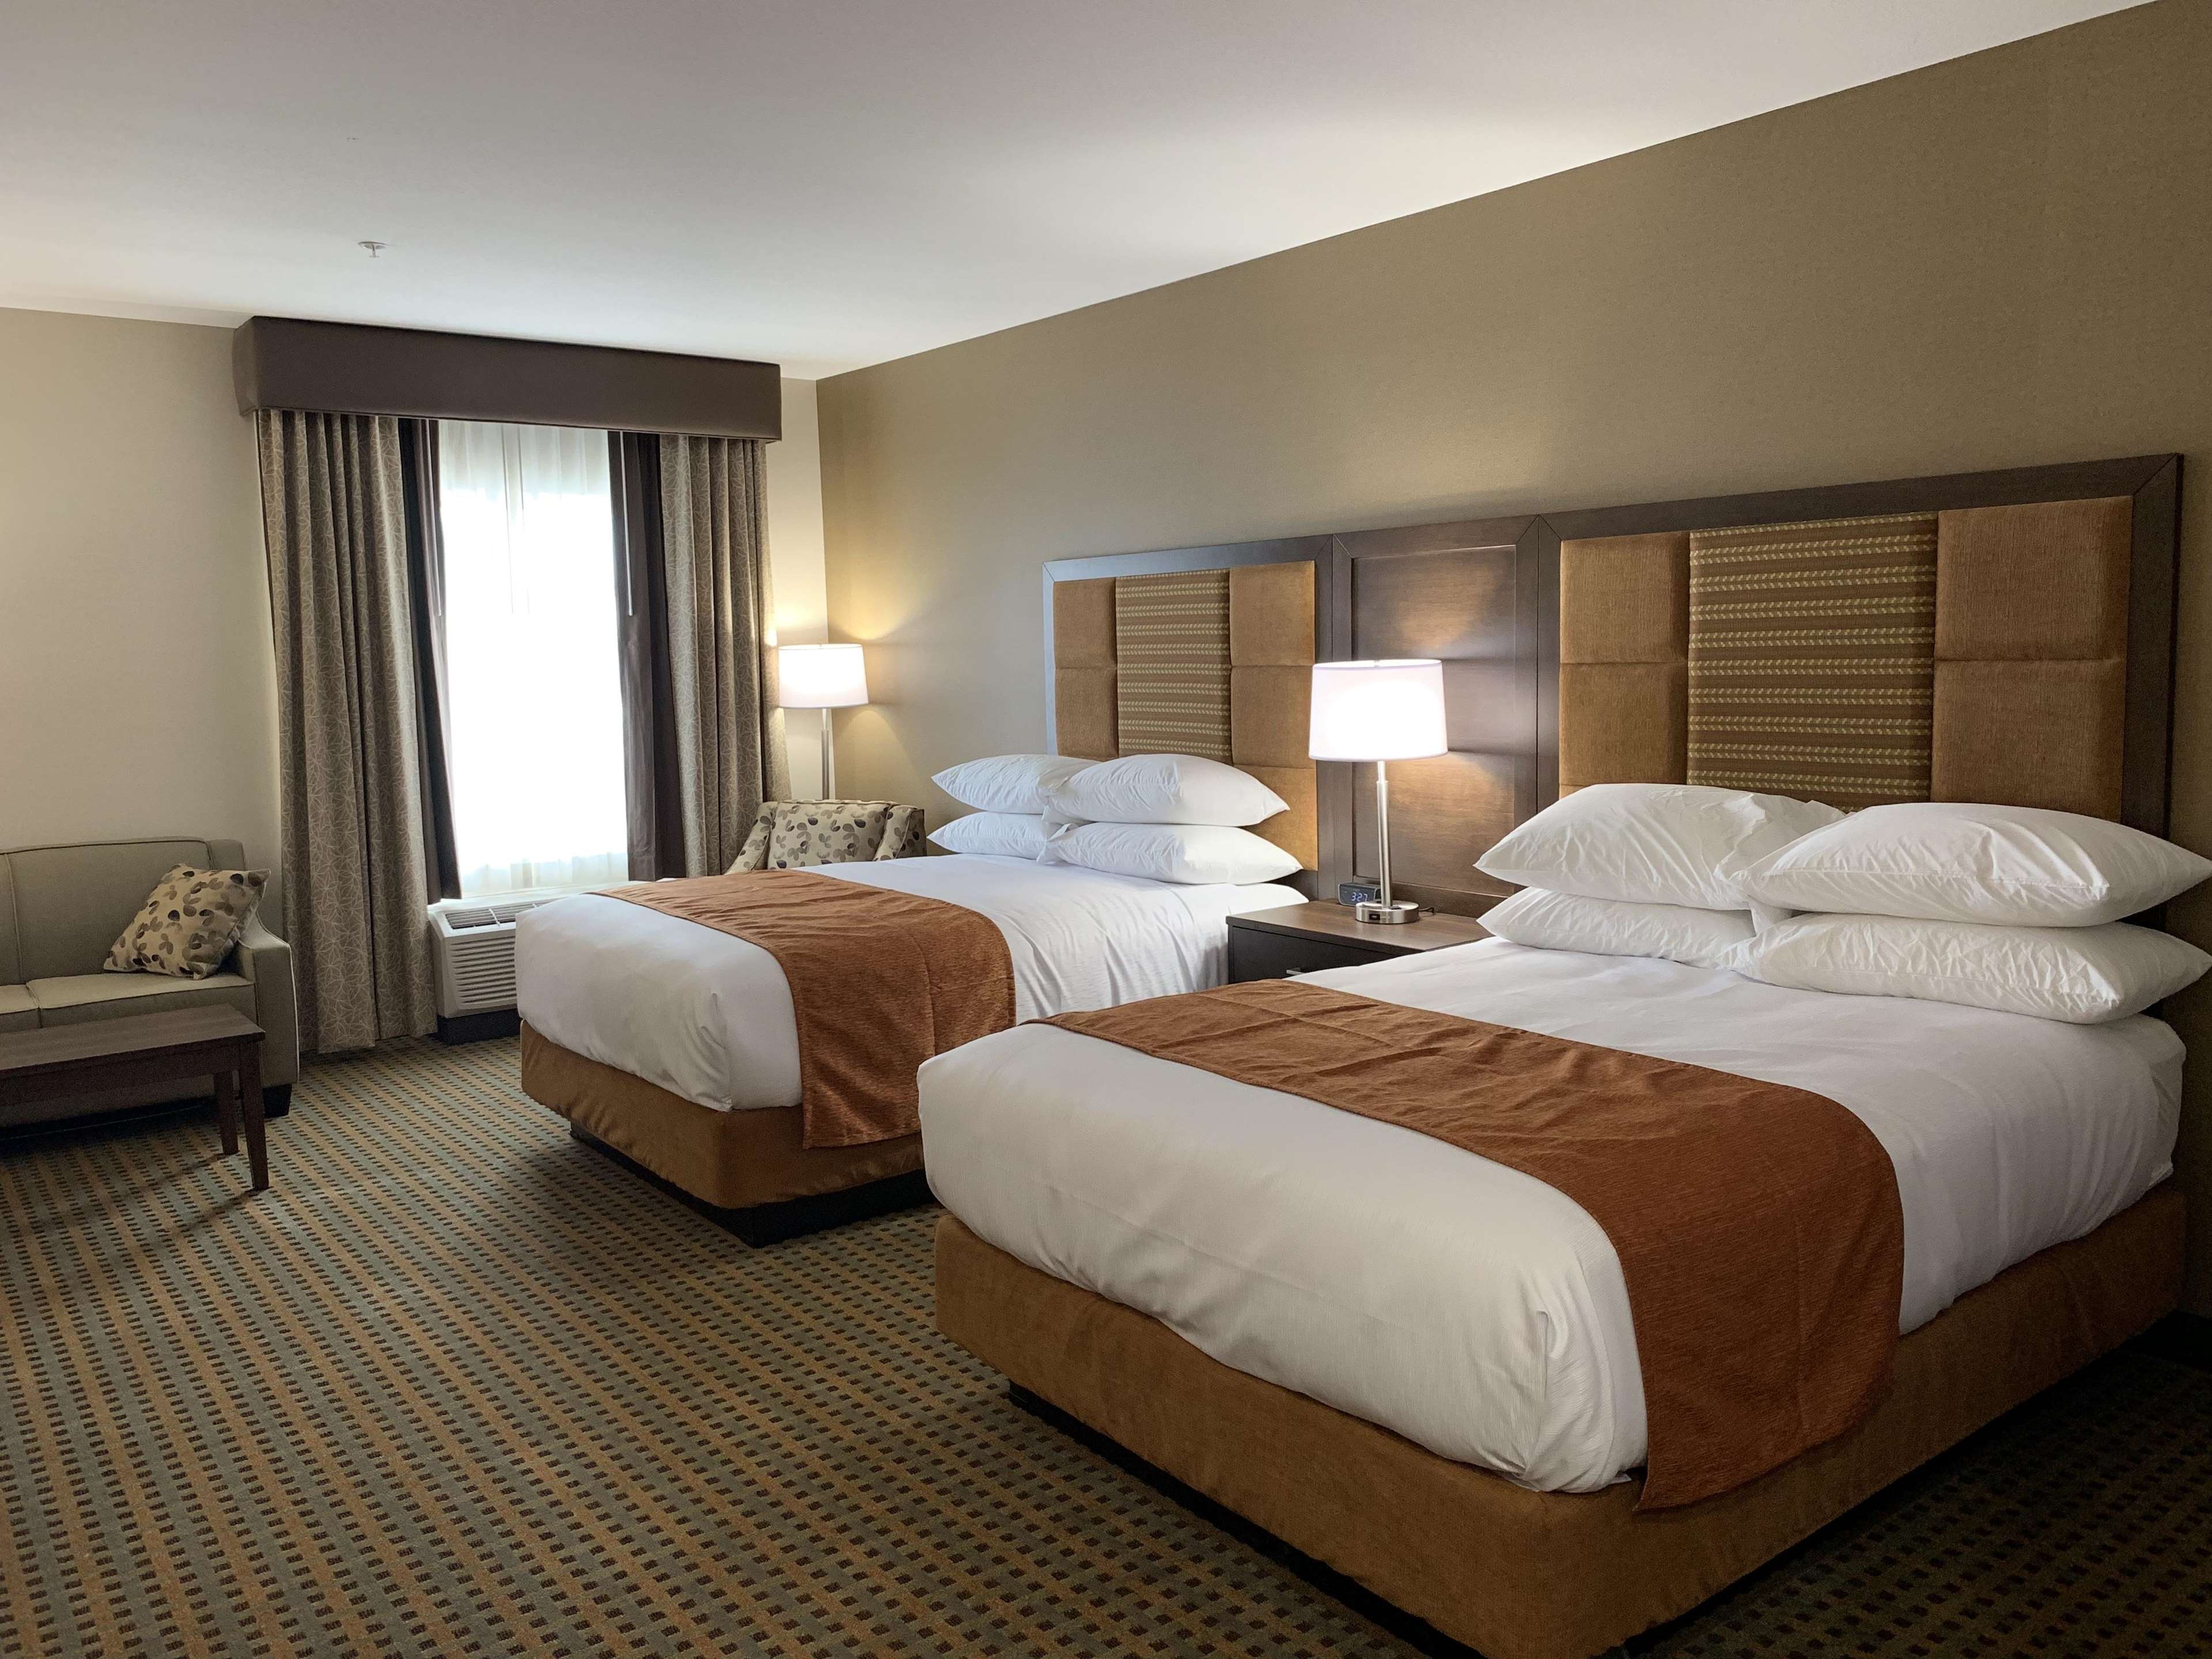 2 Queen Beds Guest Room Kitchenette Best Western Plus Hinton Inn & Suites Hinton (780)817-7000